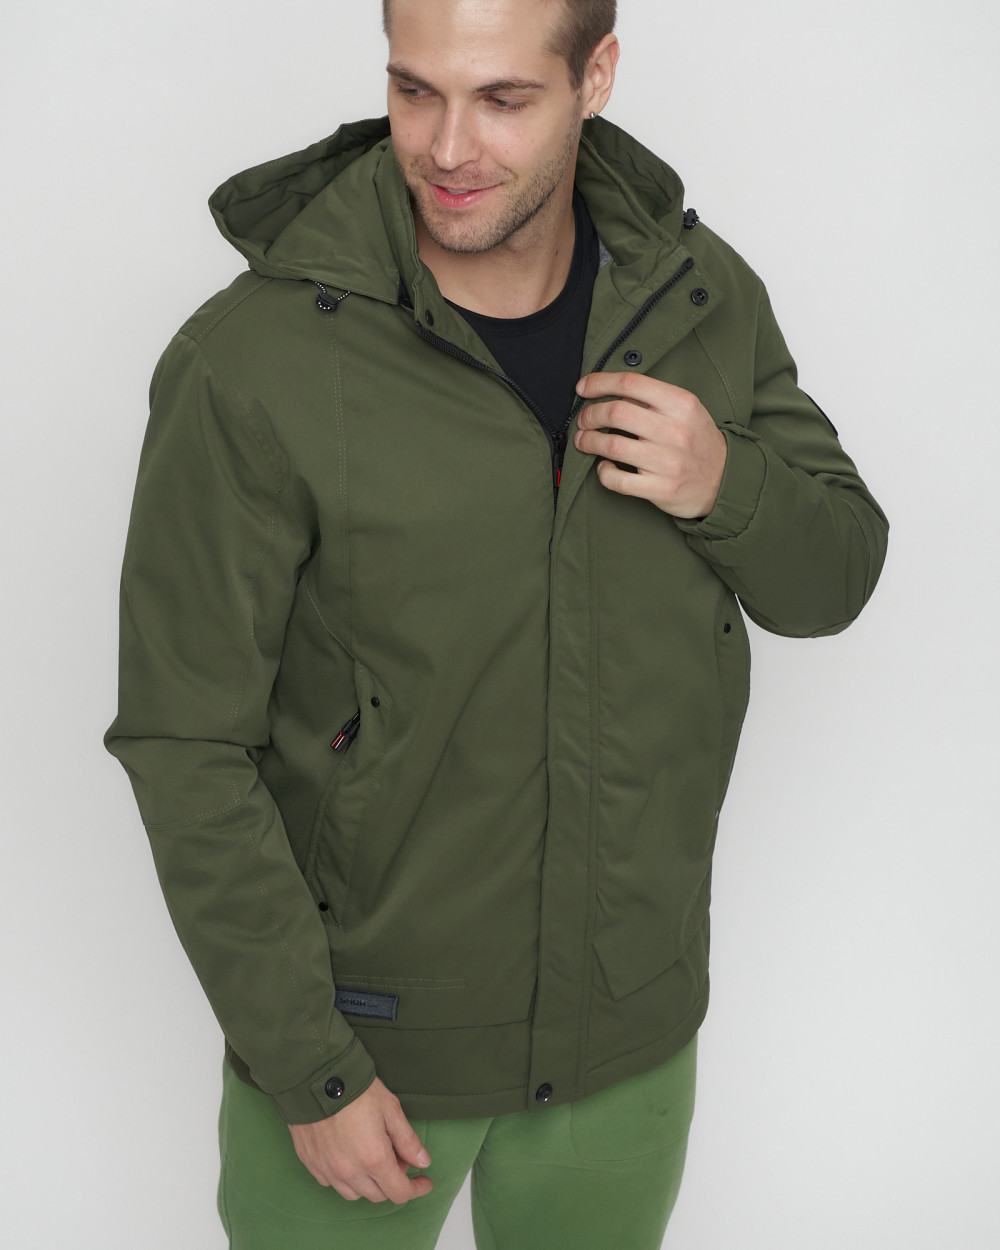 Купить куртку мужскую спортивную весеннюю оптом от производителя недорого в Москве 8599Kh 1